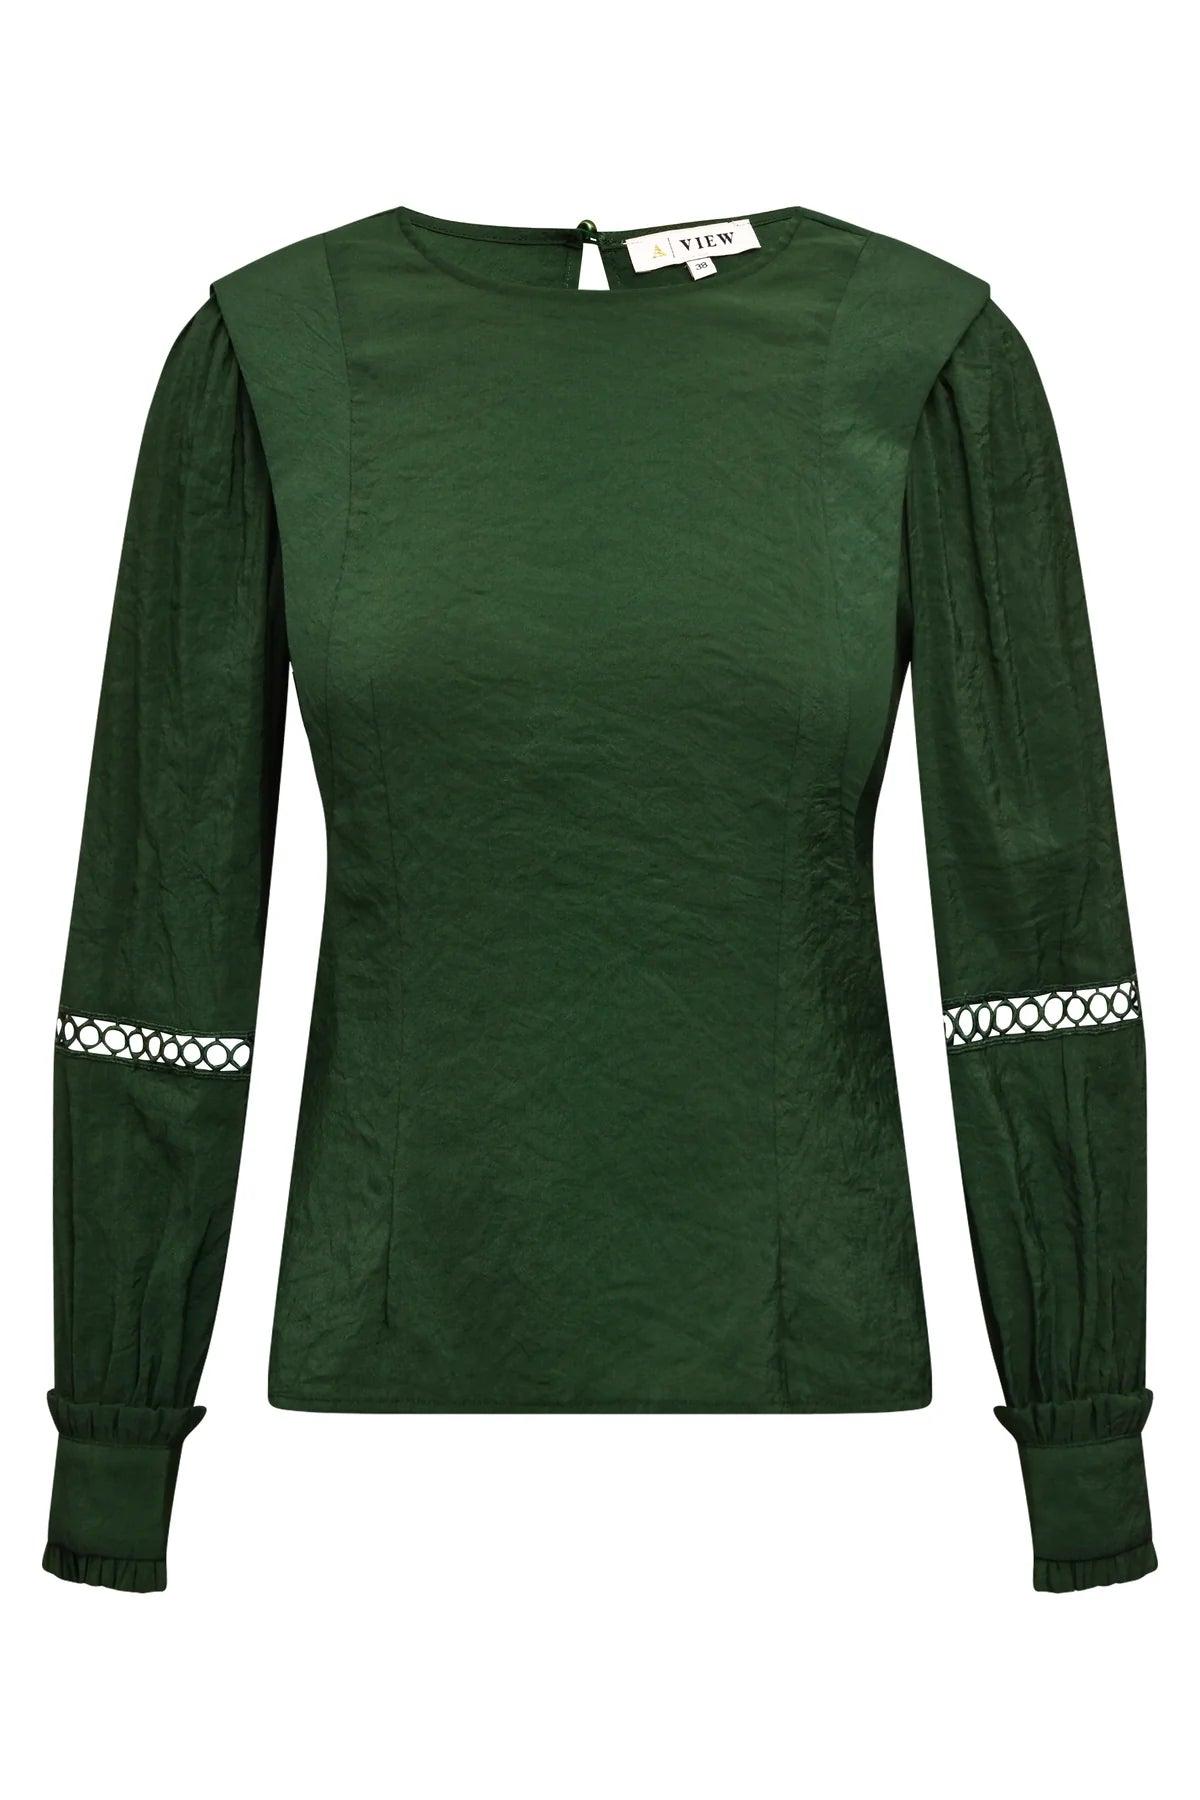 HENRIETTE STEFFENSEN Sweater (1336)